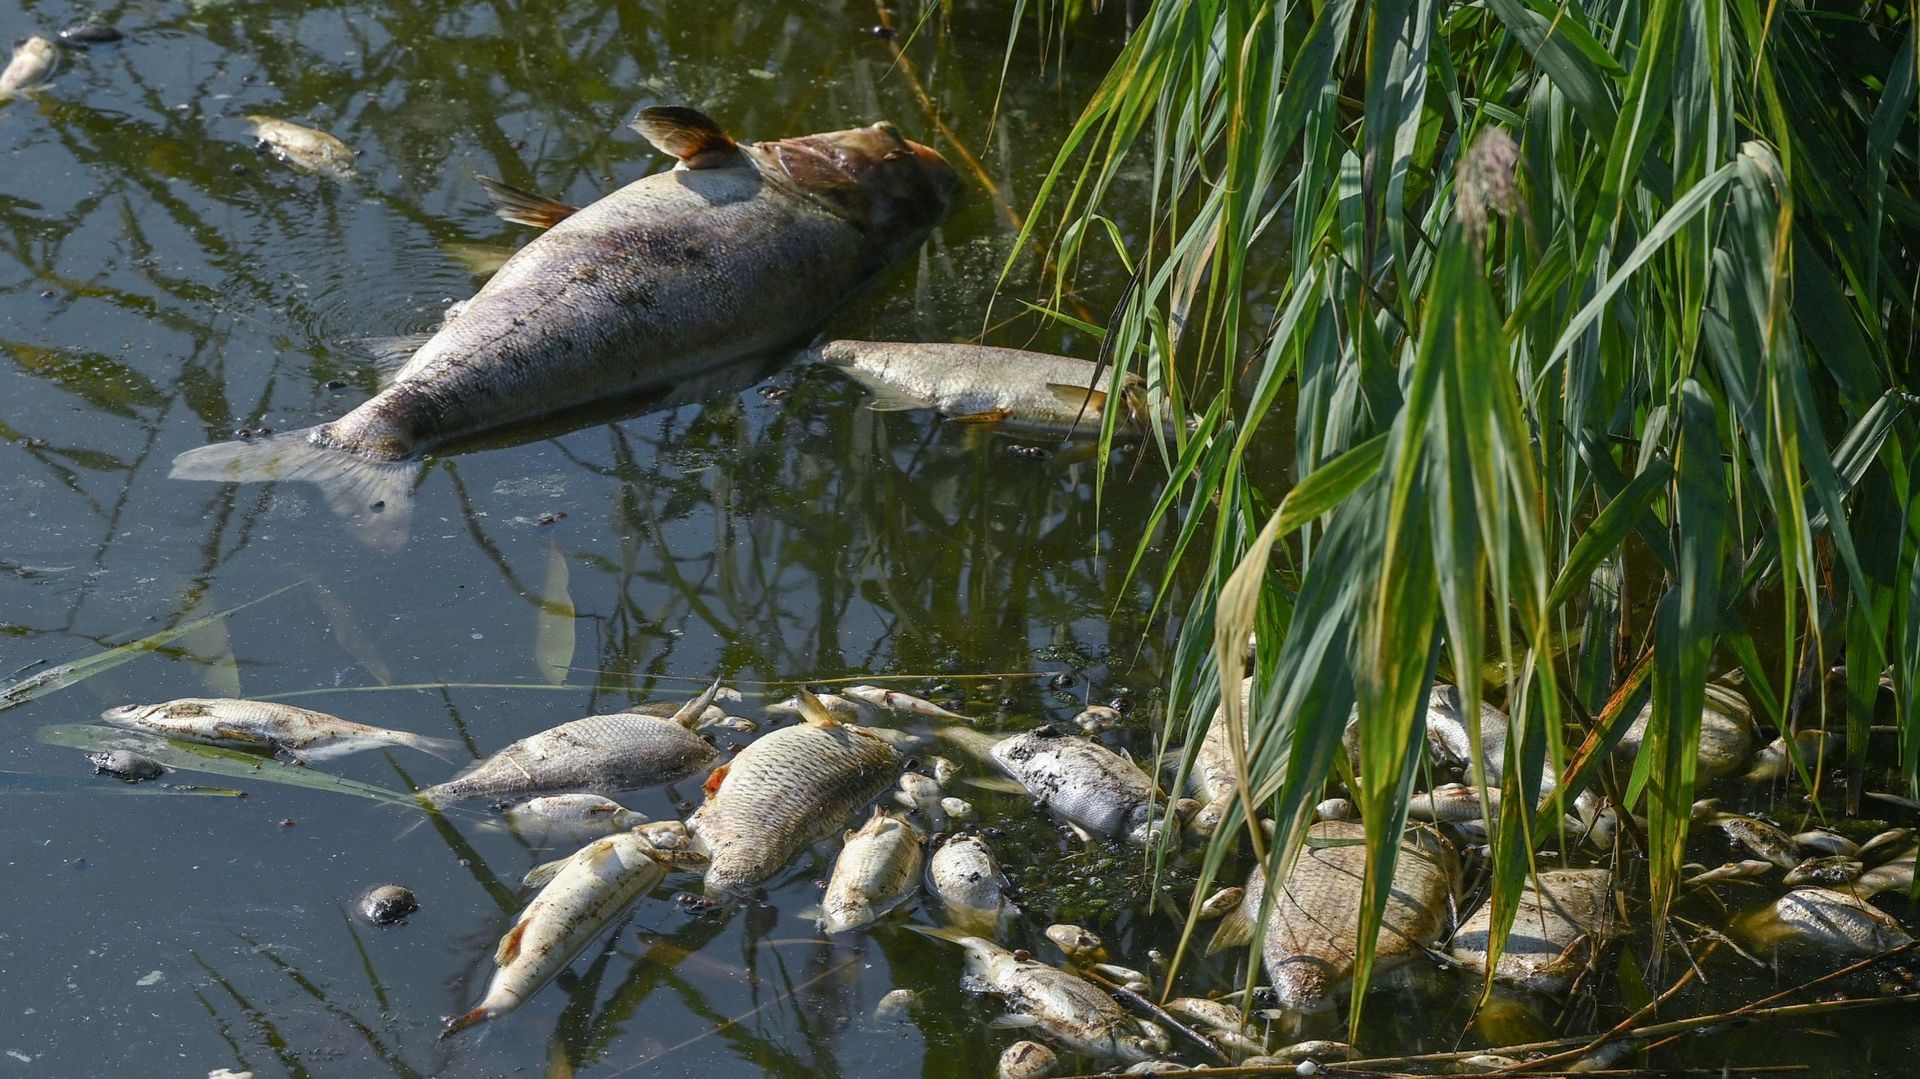 ENQUETE. Pollution, poissons morts et silences gênés En